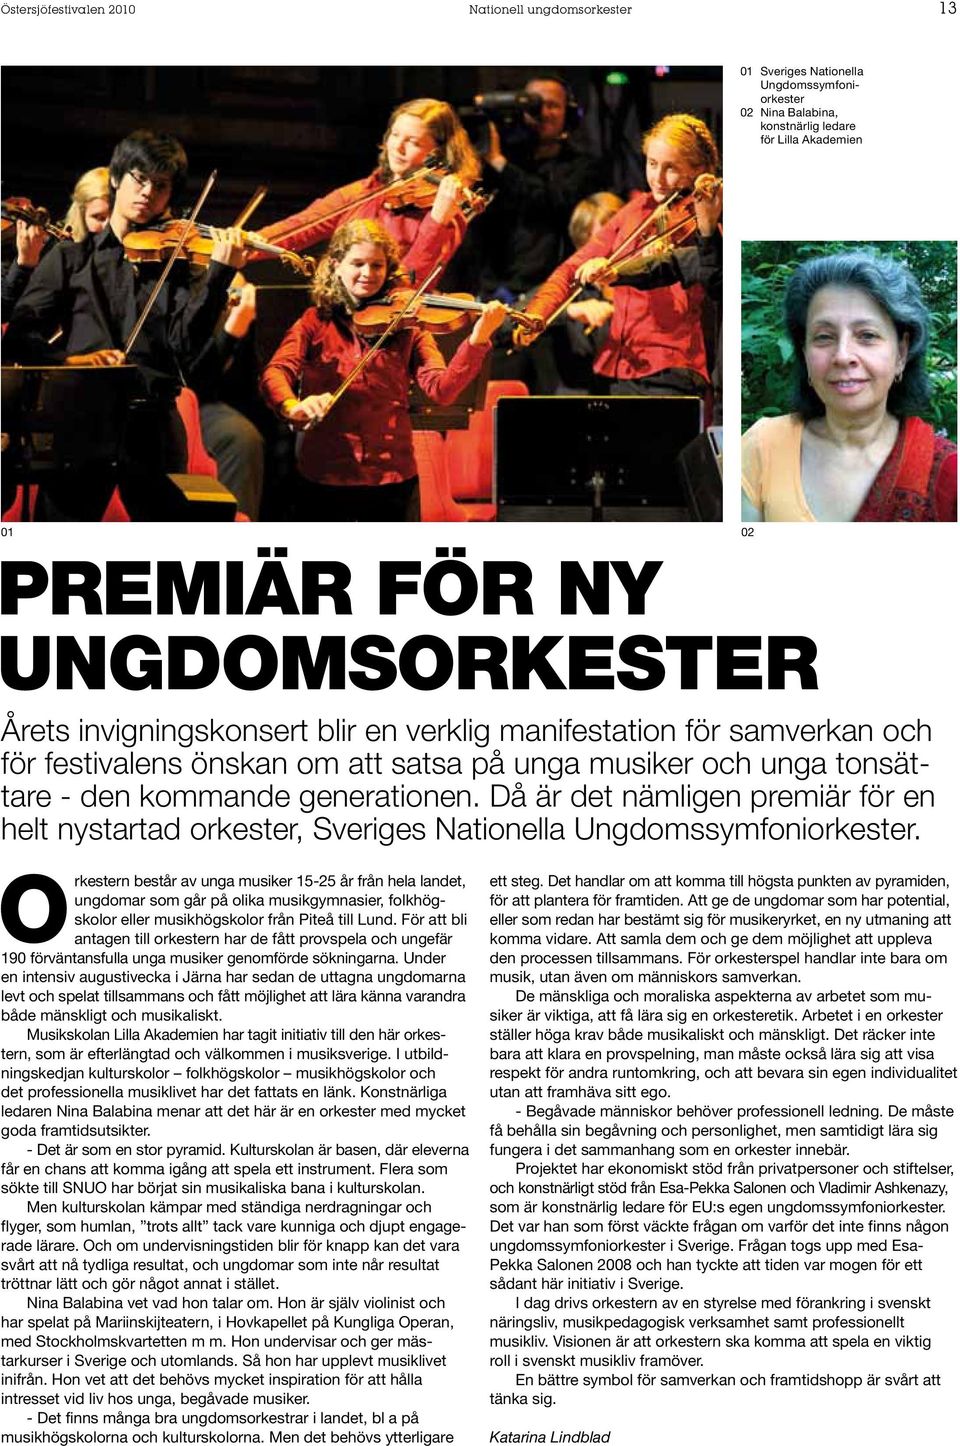 Då är det nämligen premiär för en helt nystartad orkester, Sveriges Nationella Ungdomssymfoniorkester.